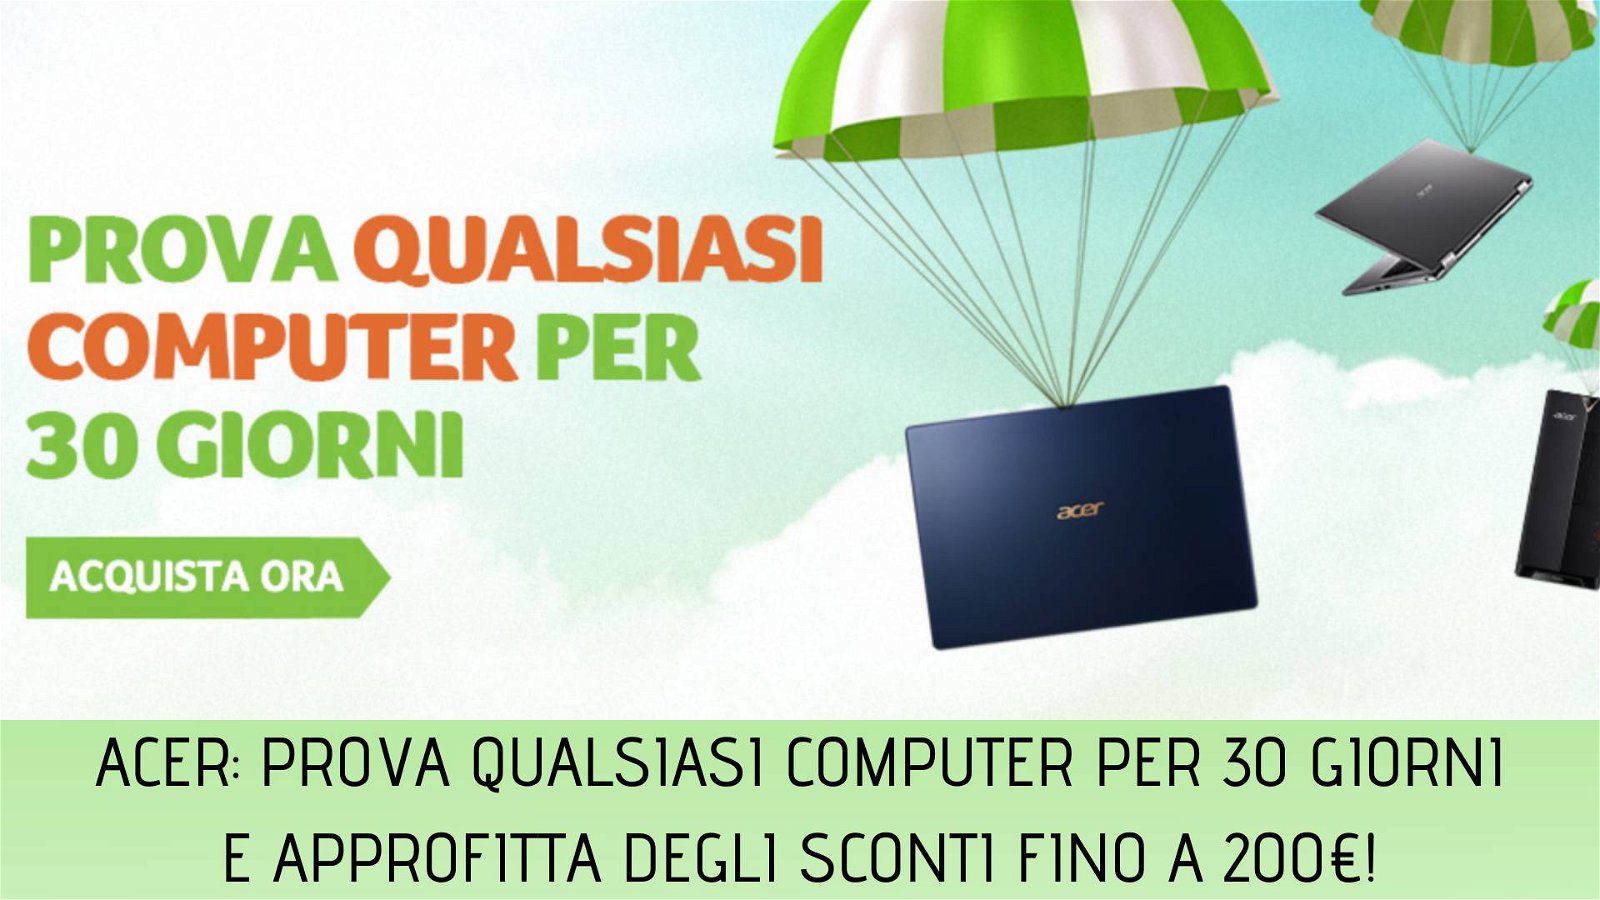 Immagine di Acer: prova qualsiasi computer per 30 giorni e nuove offerte con sconti fino a 200€